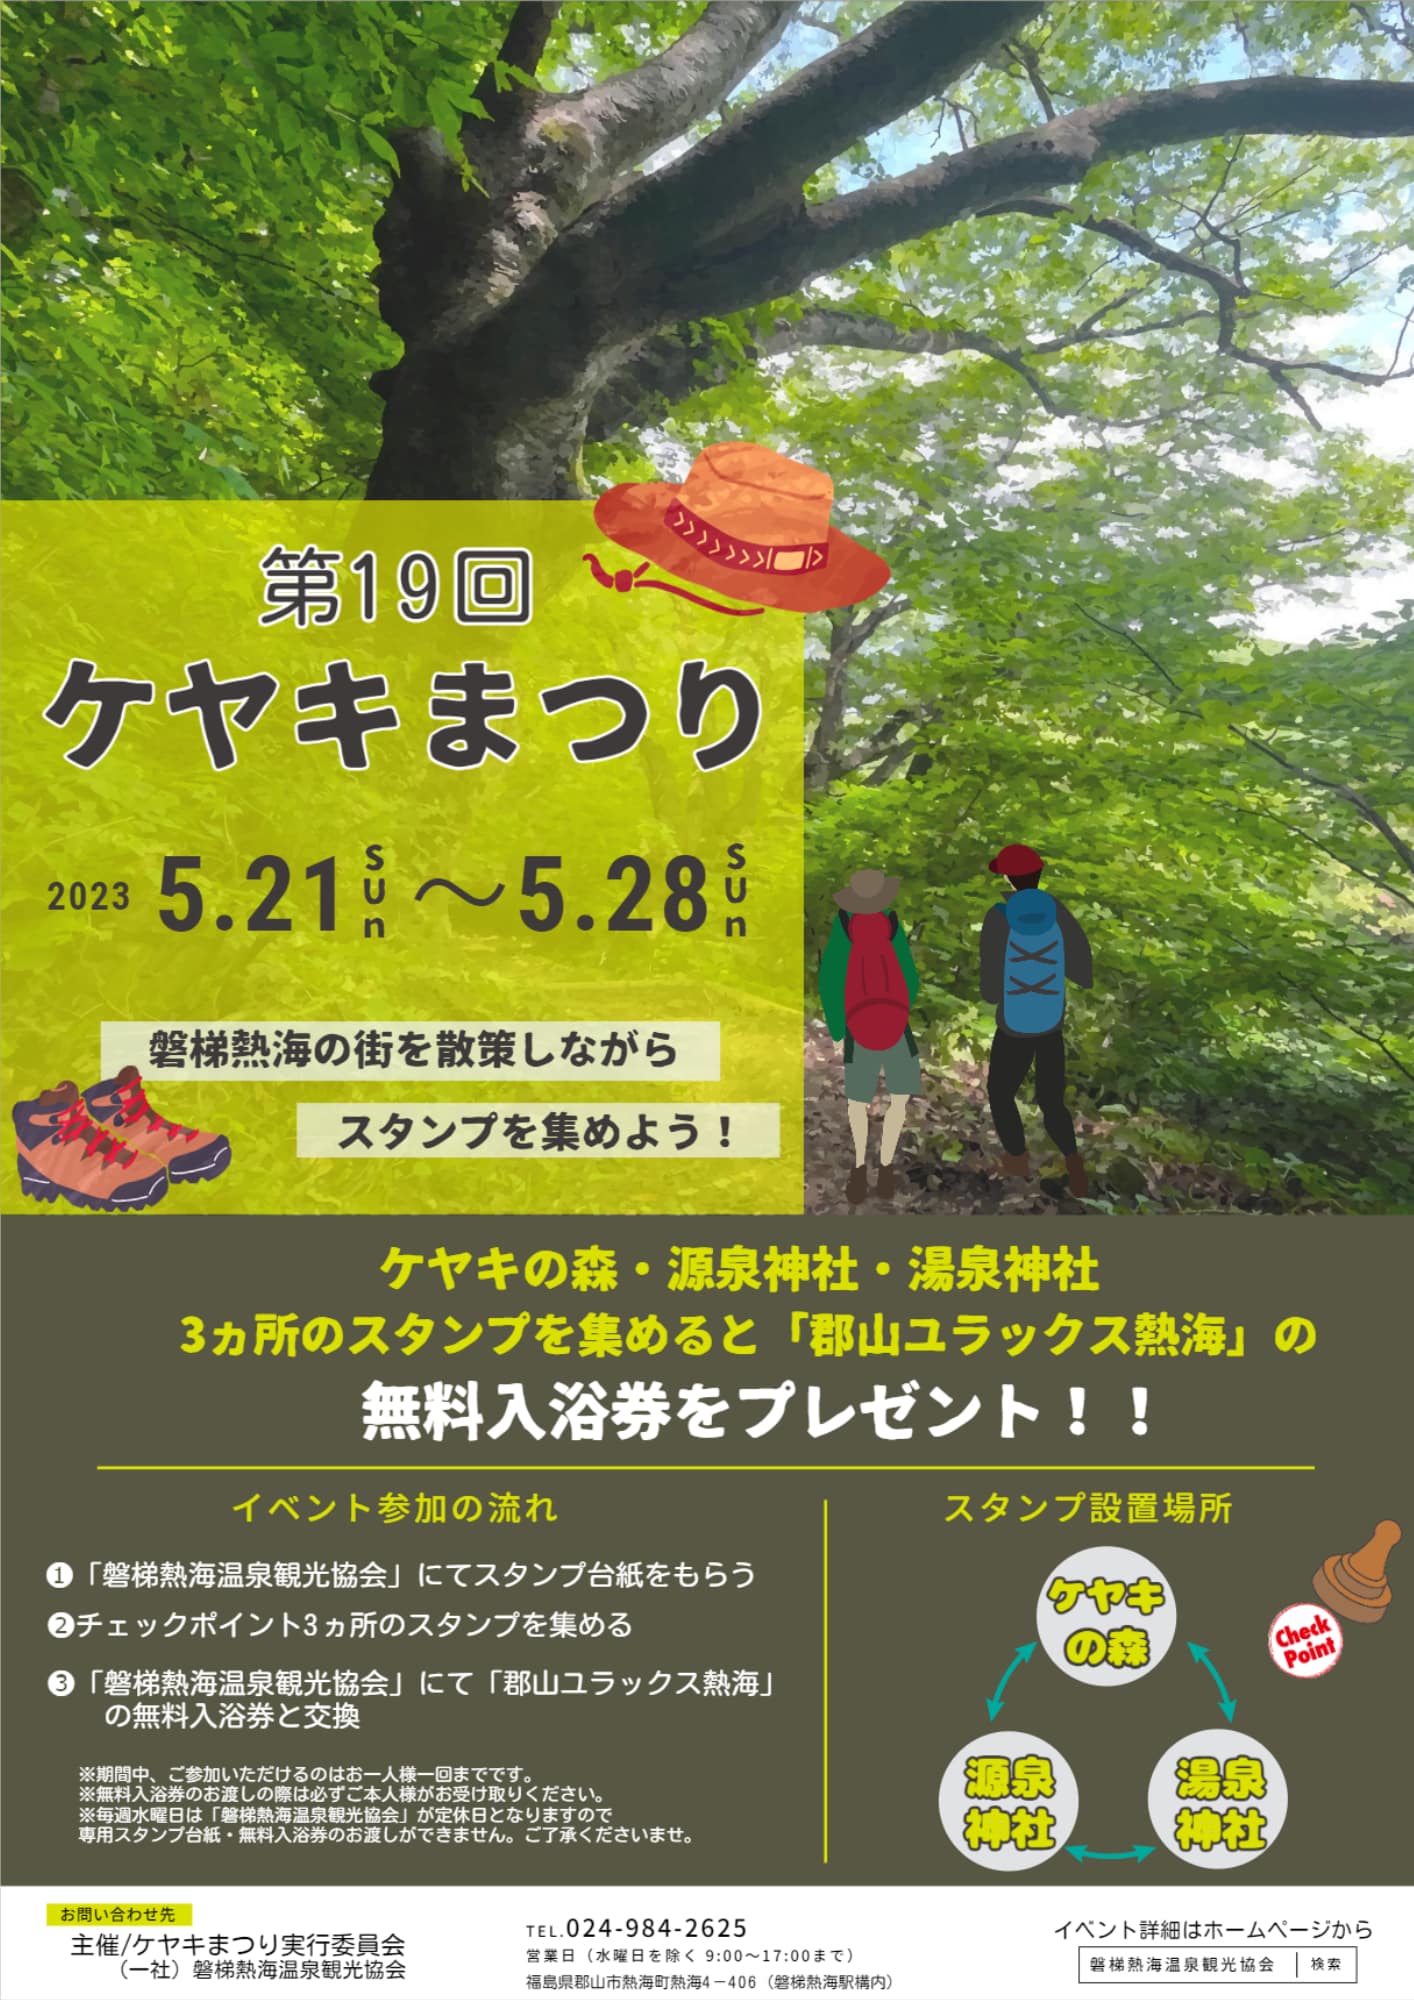 磐梯熱海温泉「ケヤキまつり」◆5月21日(日)～28日(日)